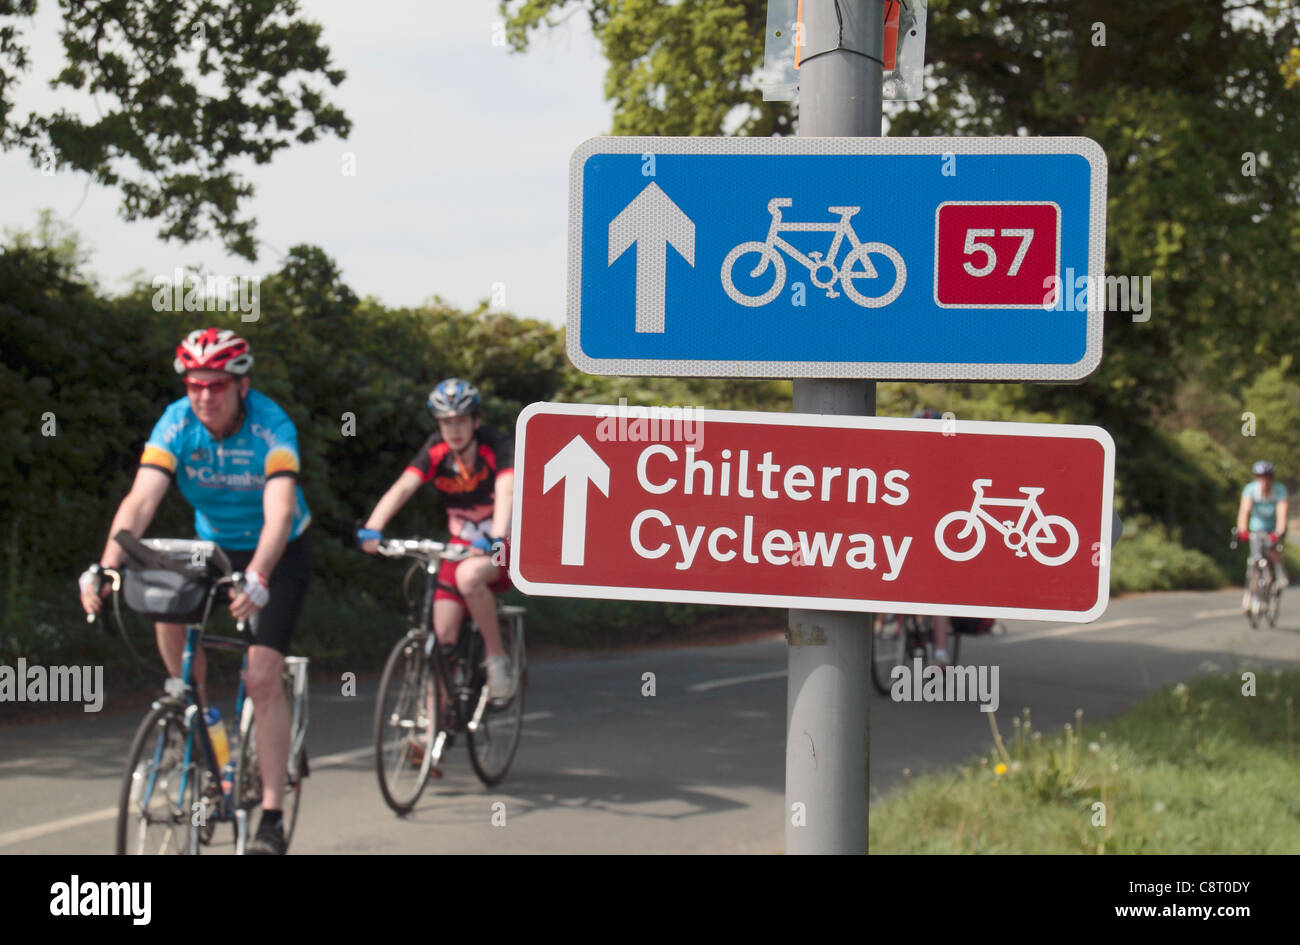 Radfahrer fahren Vergangenheit Verkehrszeichen für die Chilterns Cycleway und nationale Route 57 in der Nähe von Great Missenden, Buckinghamshire, Großbritannien fahren. Stockfoto